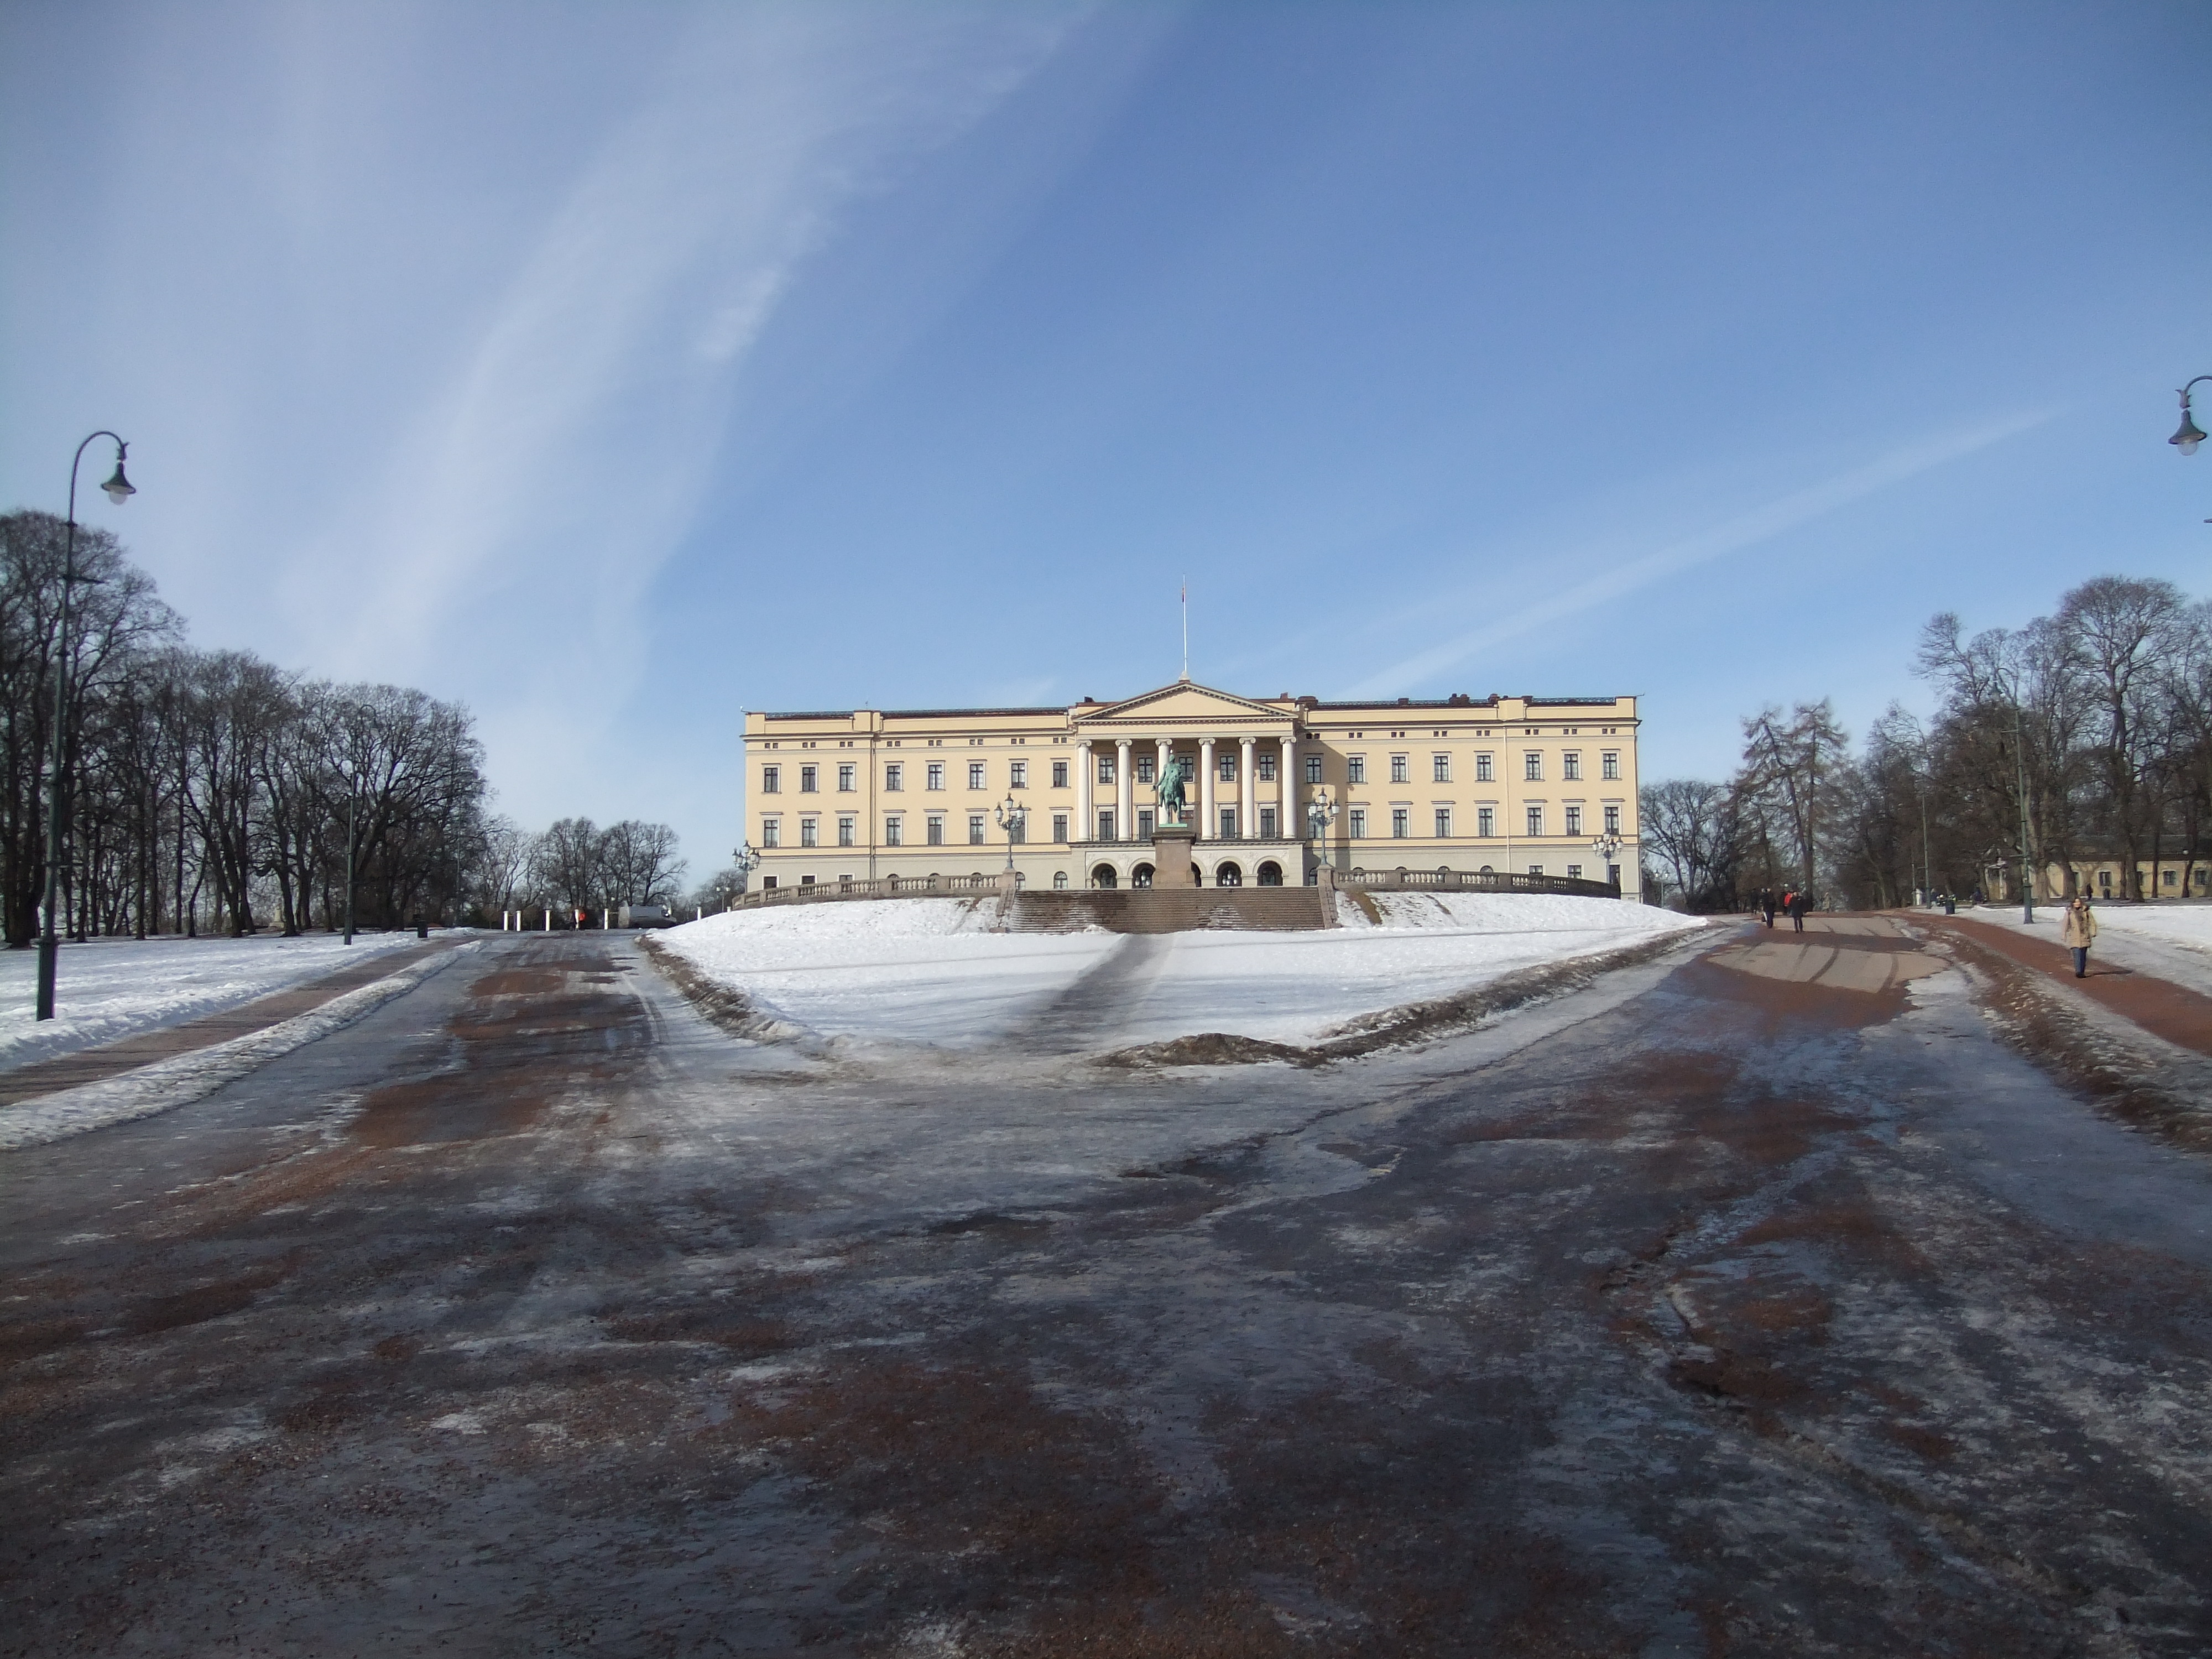 Royal Palace, Oslo, Norway